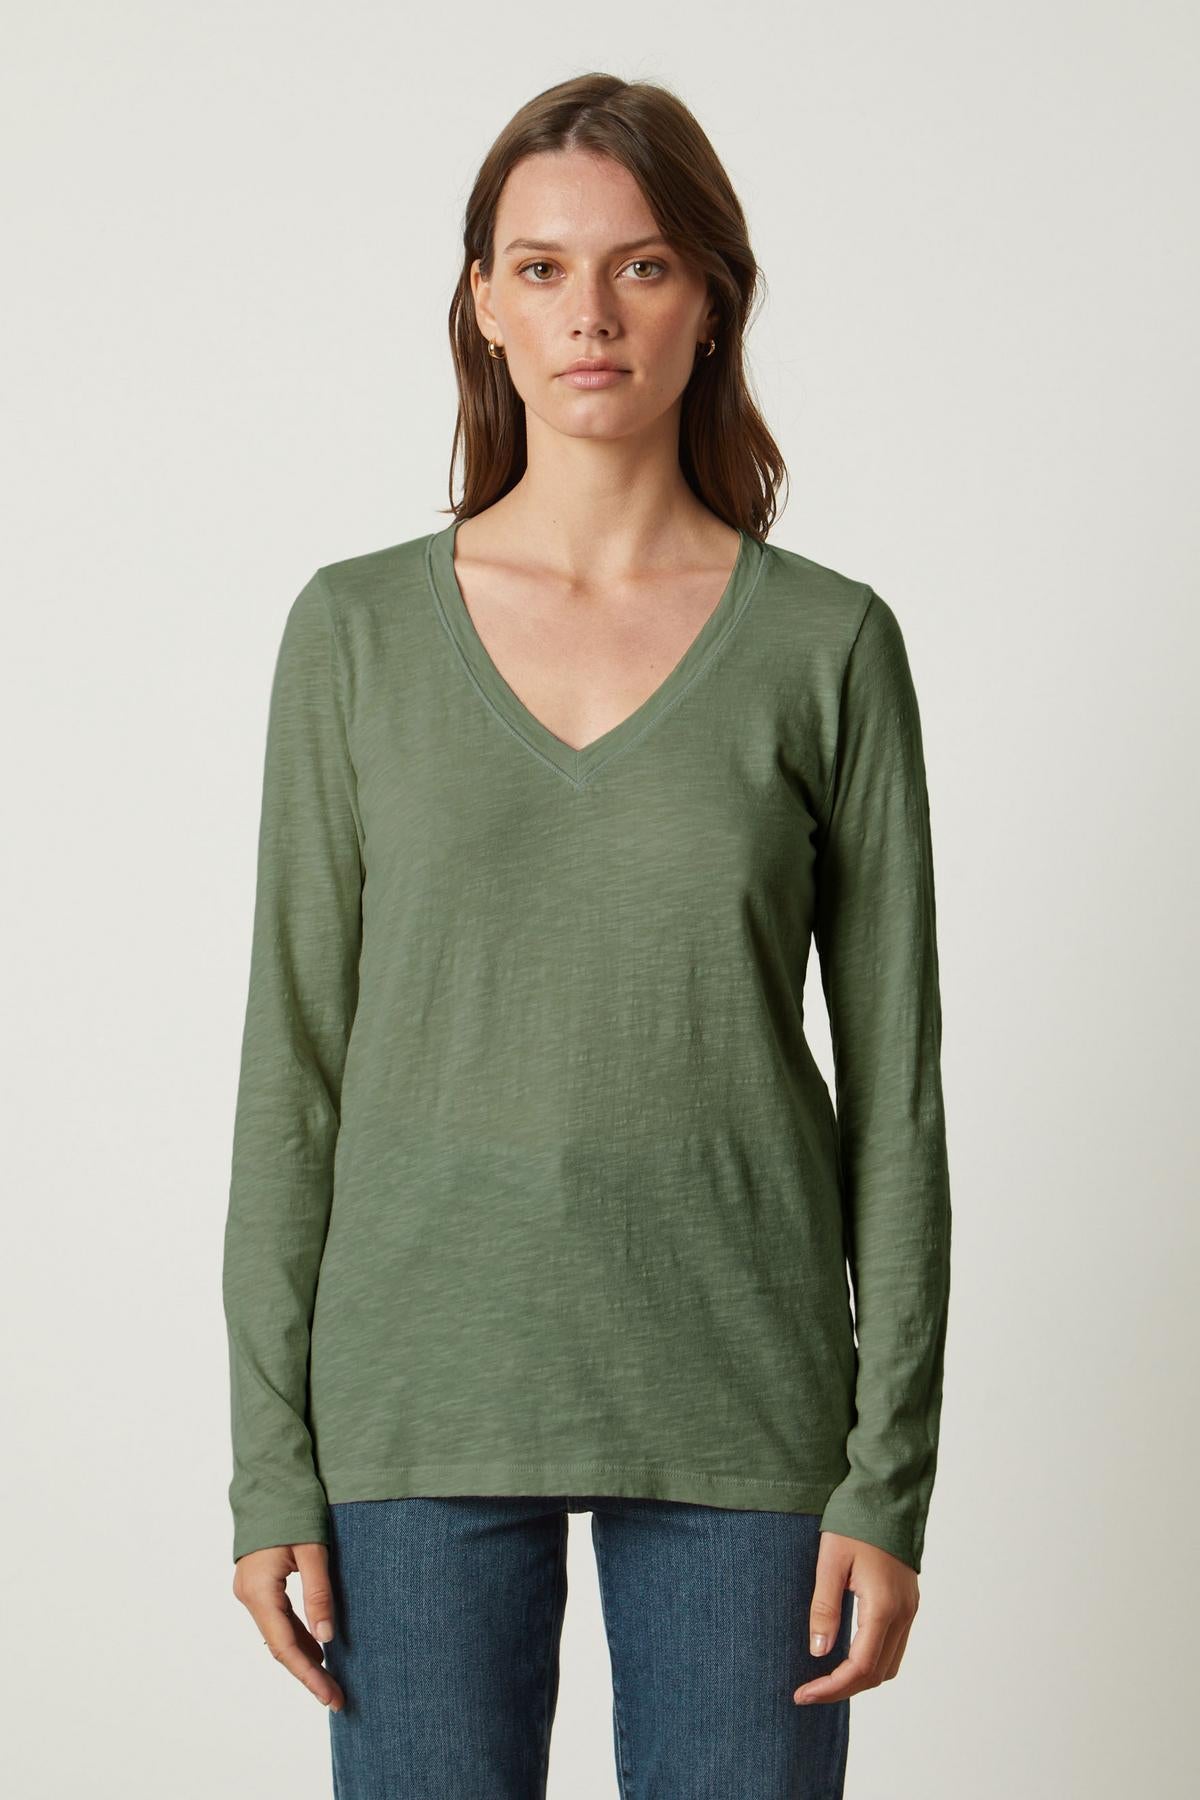 The Velvet by Graham & Spencer BLAIRE ORIGINAL SLUB TEE green v-neck t-shirt.-35782759219393